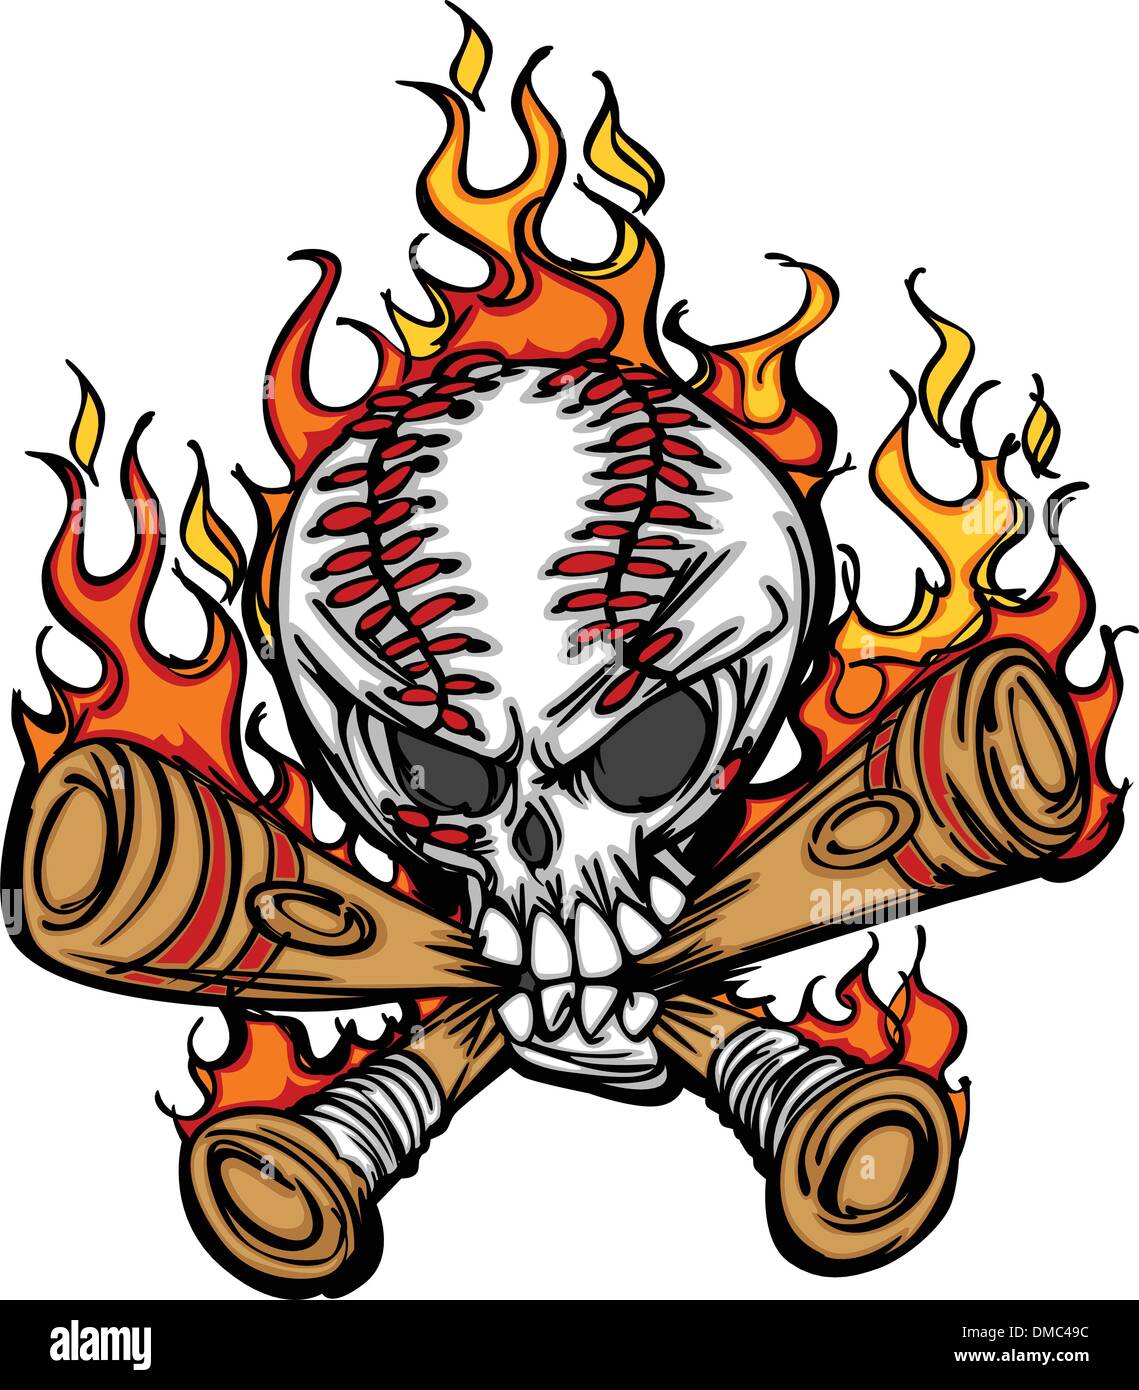 Softball Baseball Skull and Bats Flaming Cartoon Image Stock Vector